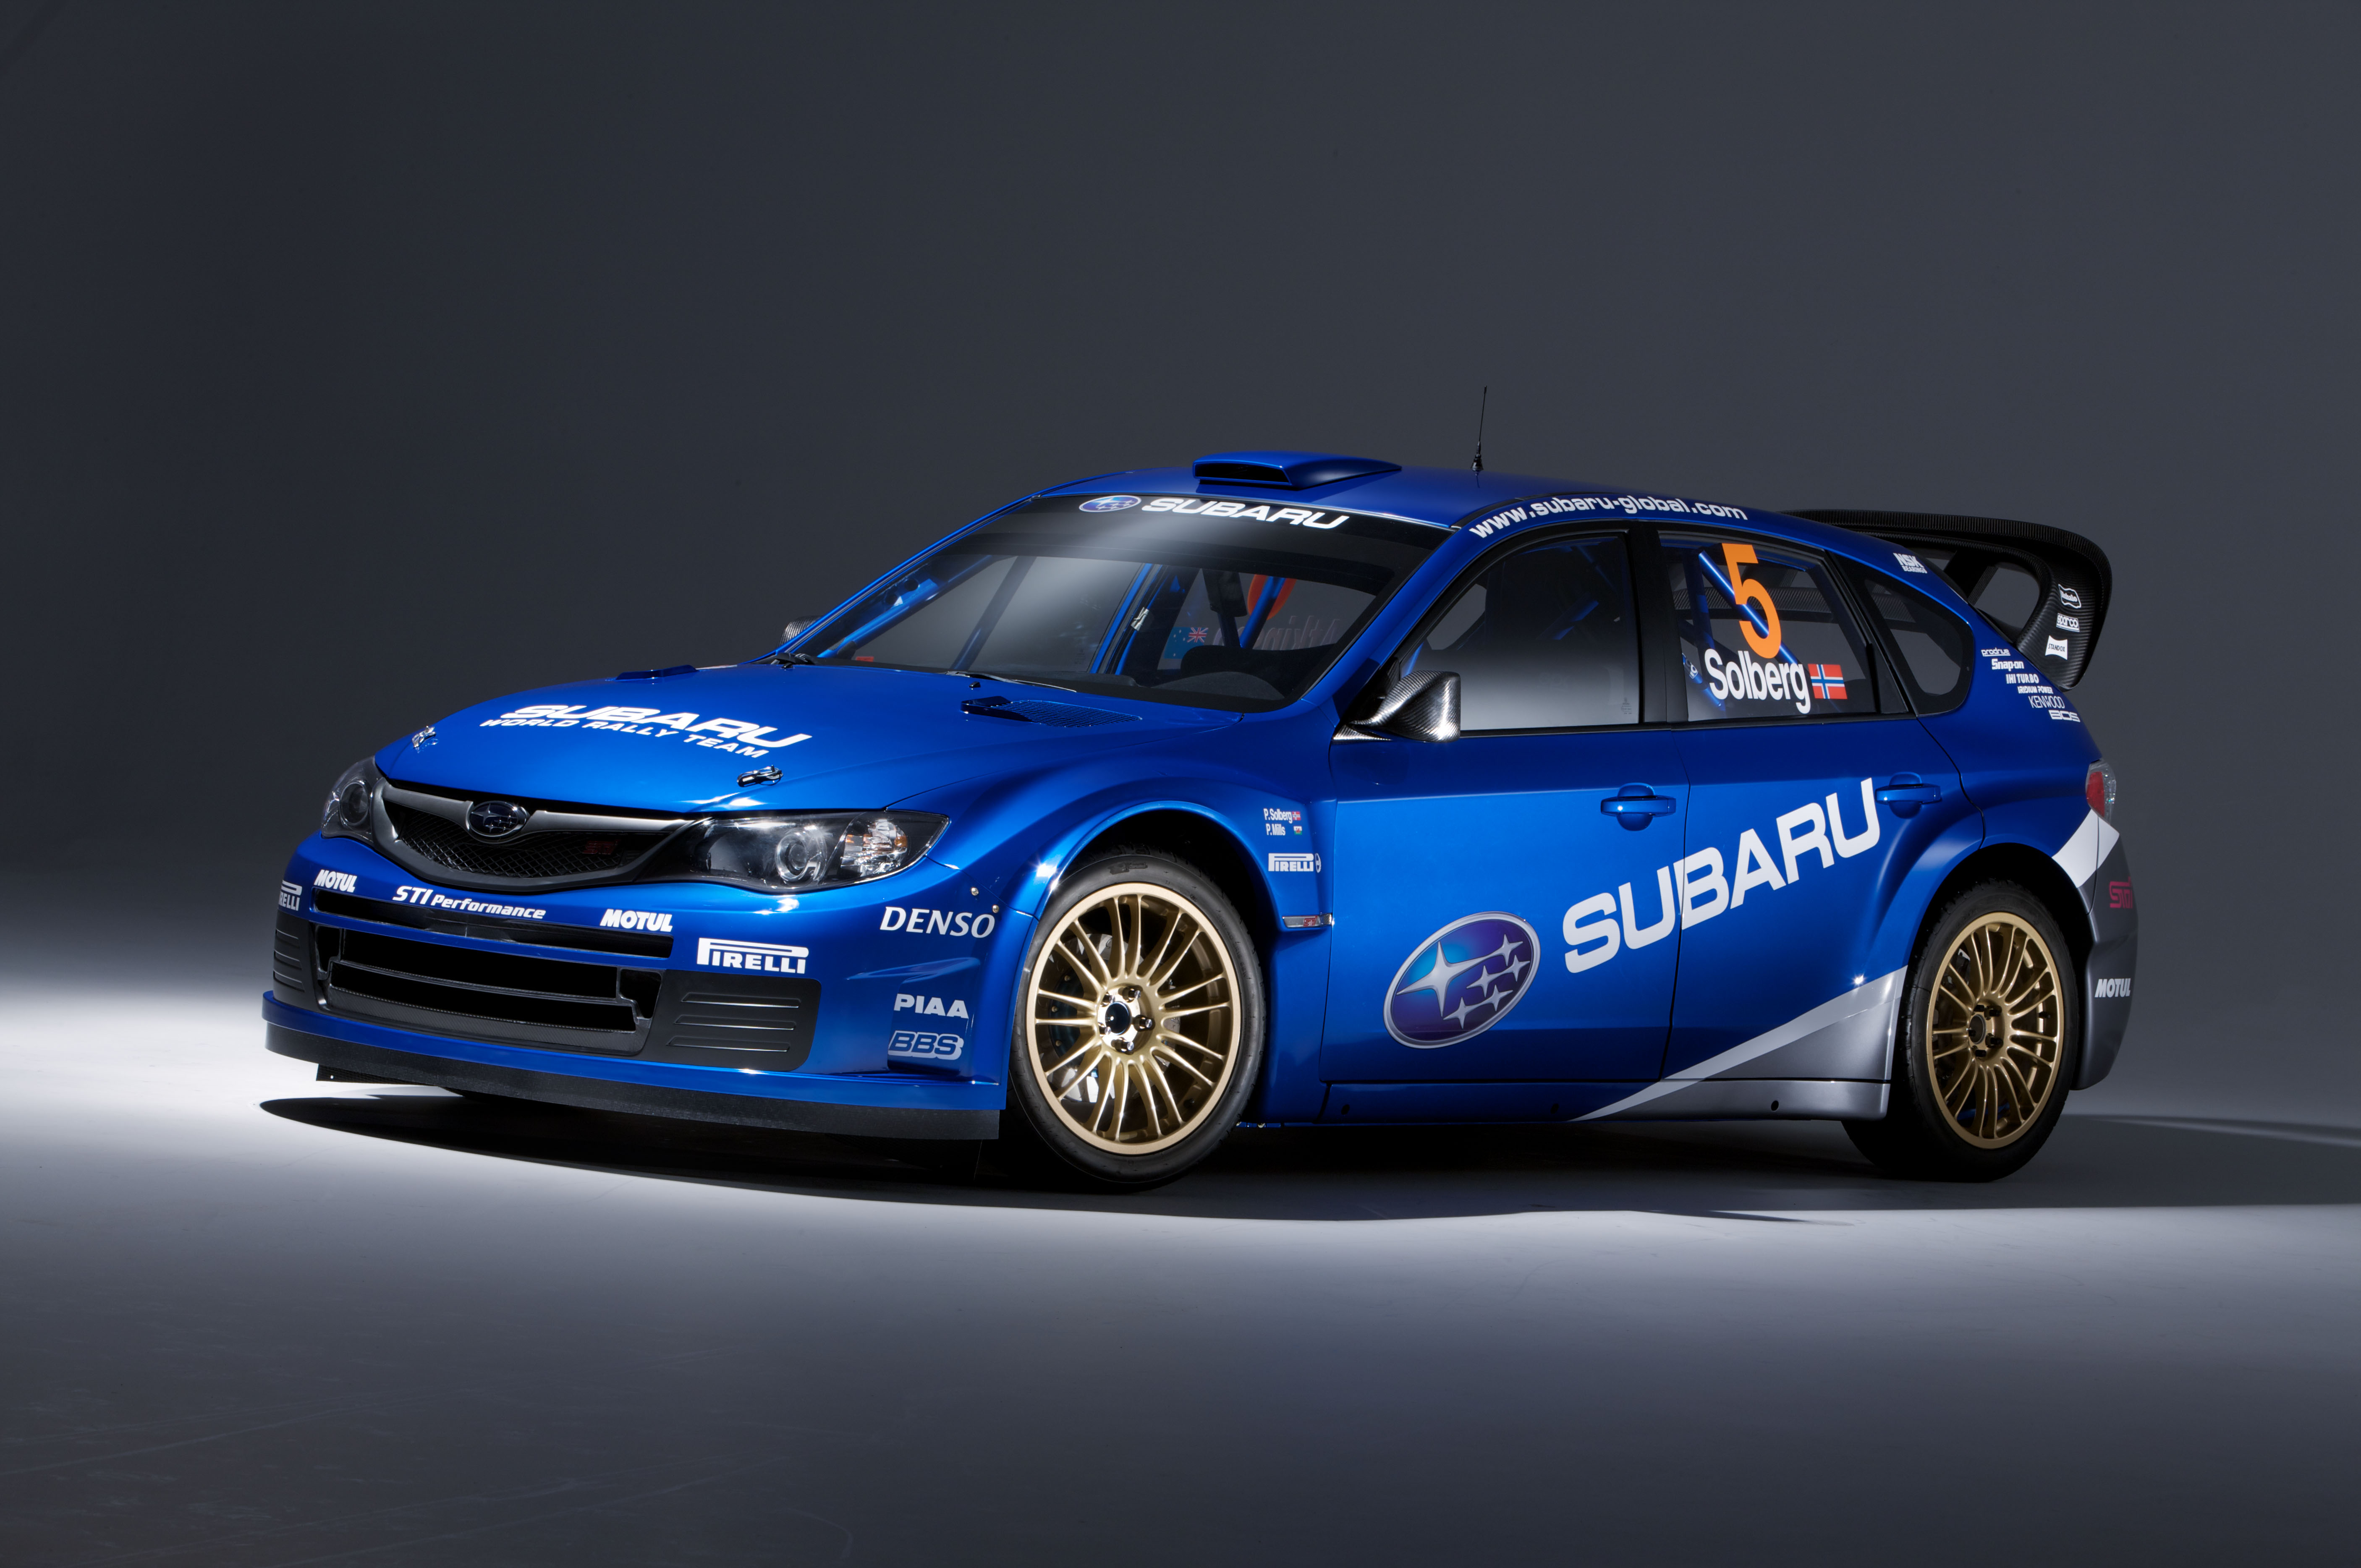 cars, rally, Subaru Impreza WRC, Petter Solberg, rally cars, blue cars, racing cars, rally car - desktop wallpaper